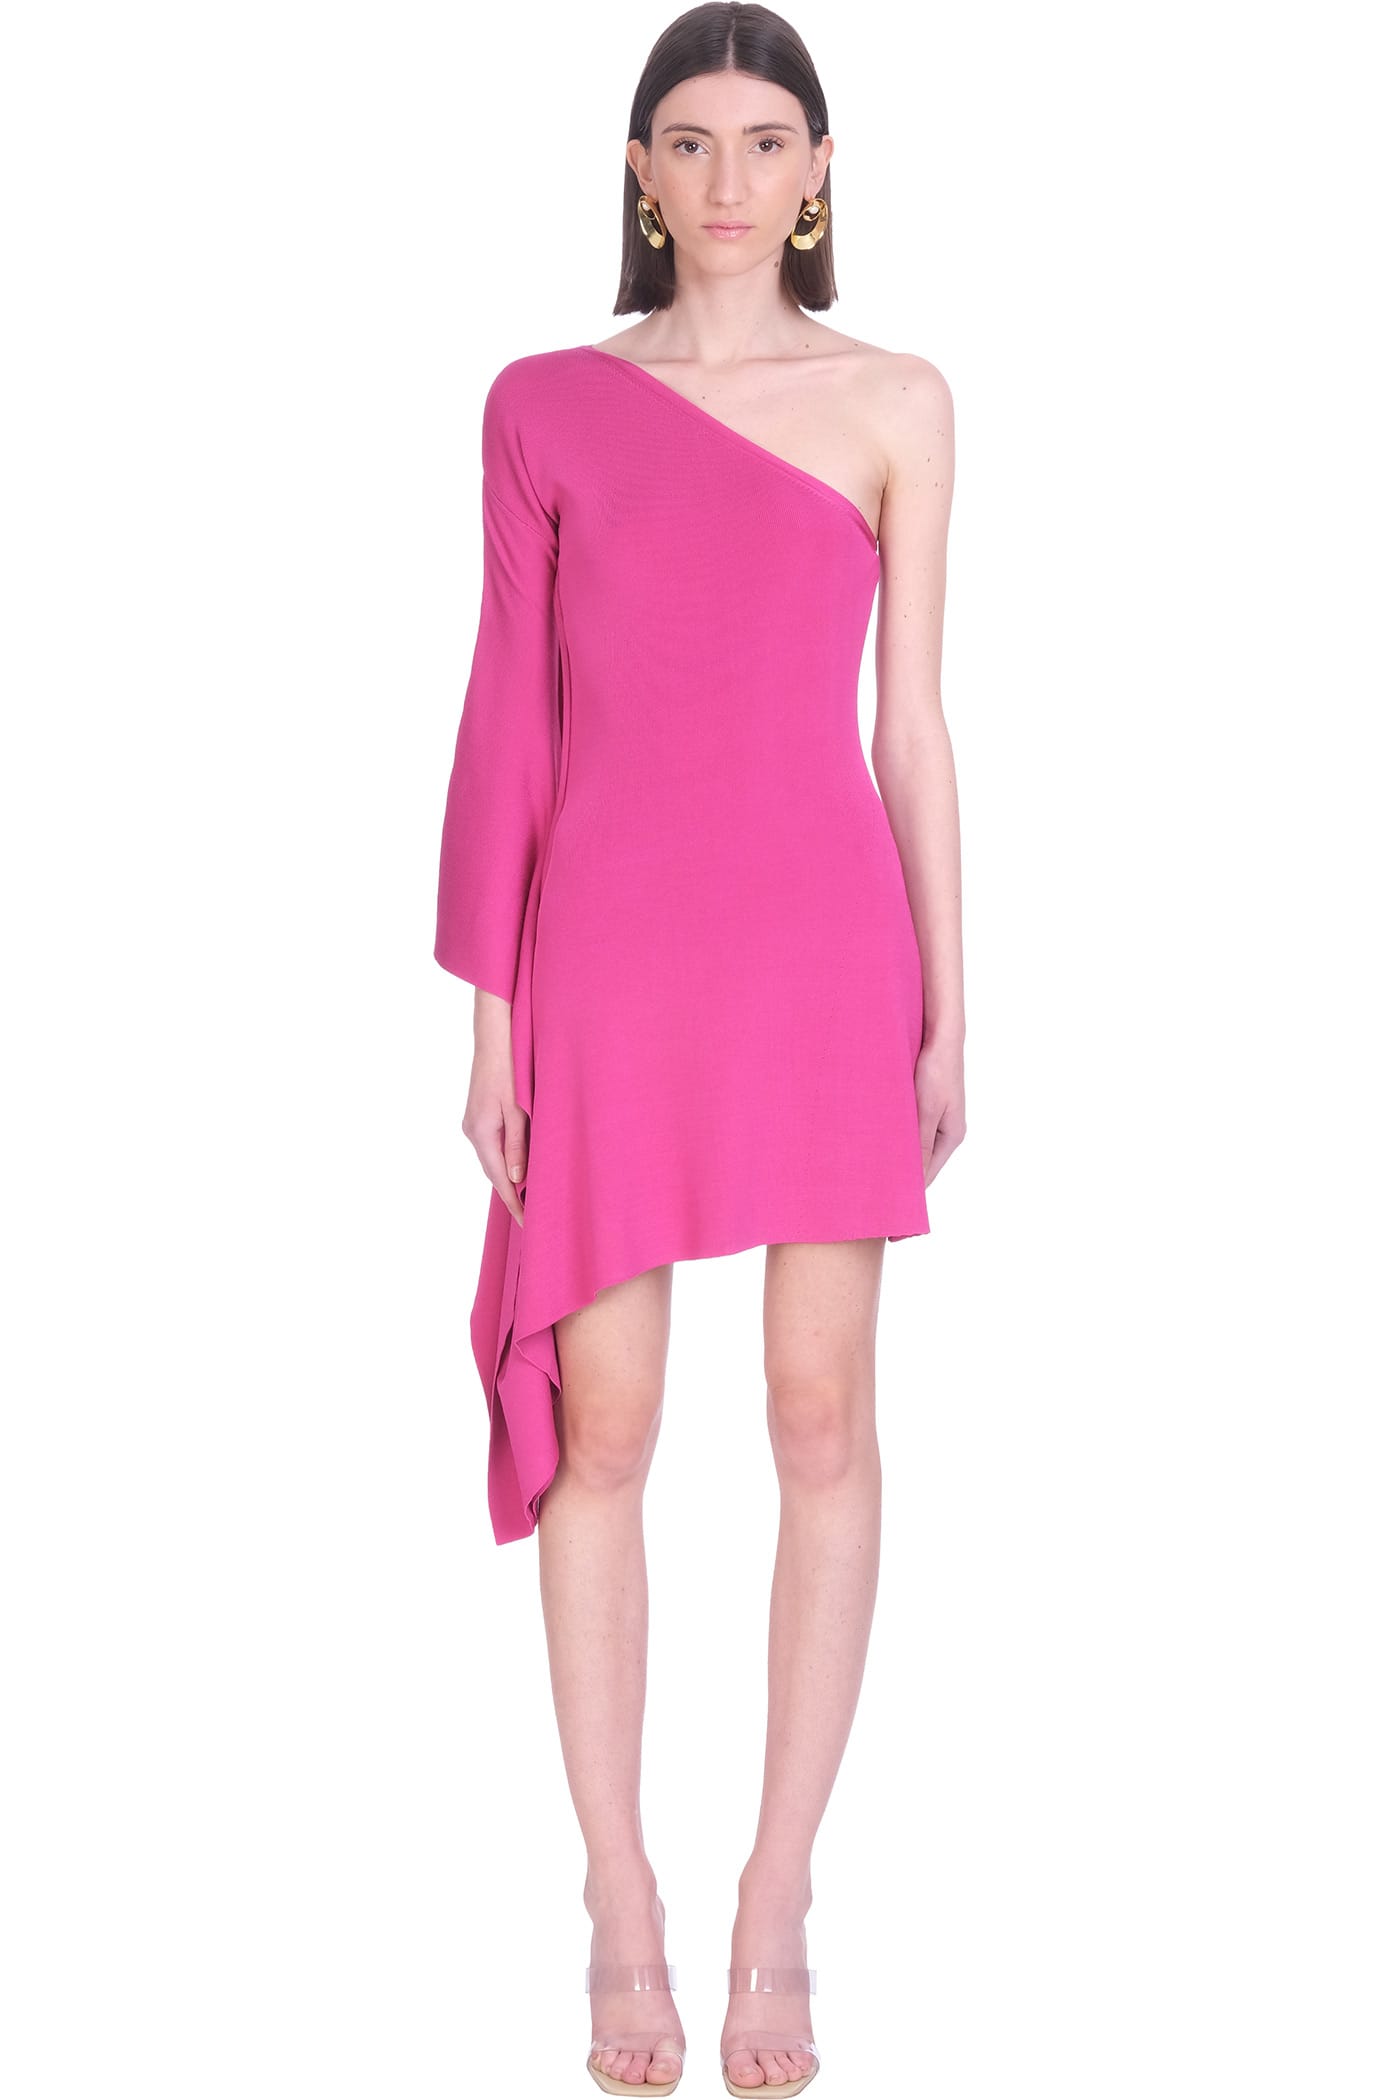 Cult Gaia Evora Knit Dress In Rose-pink Viscose